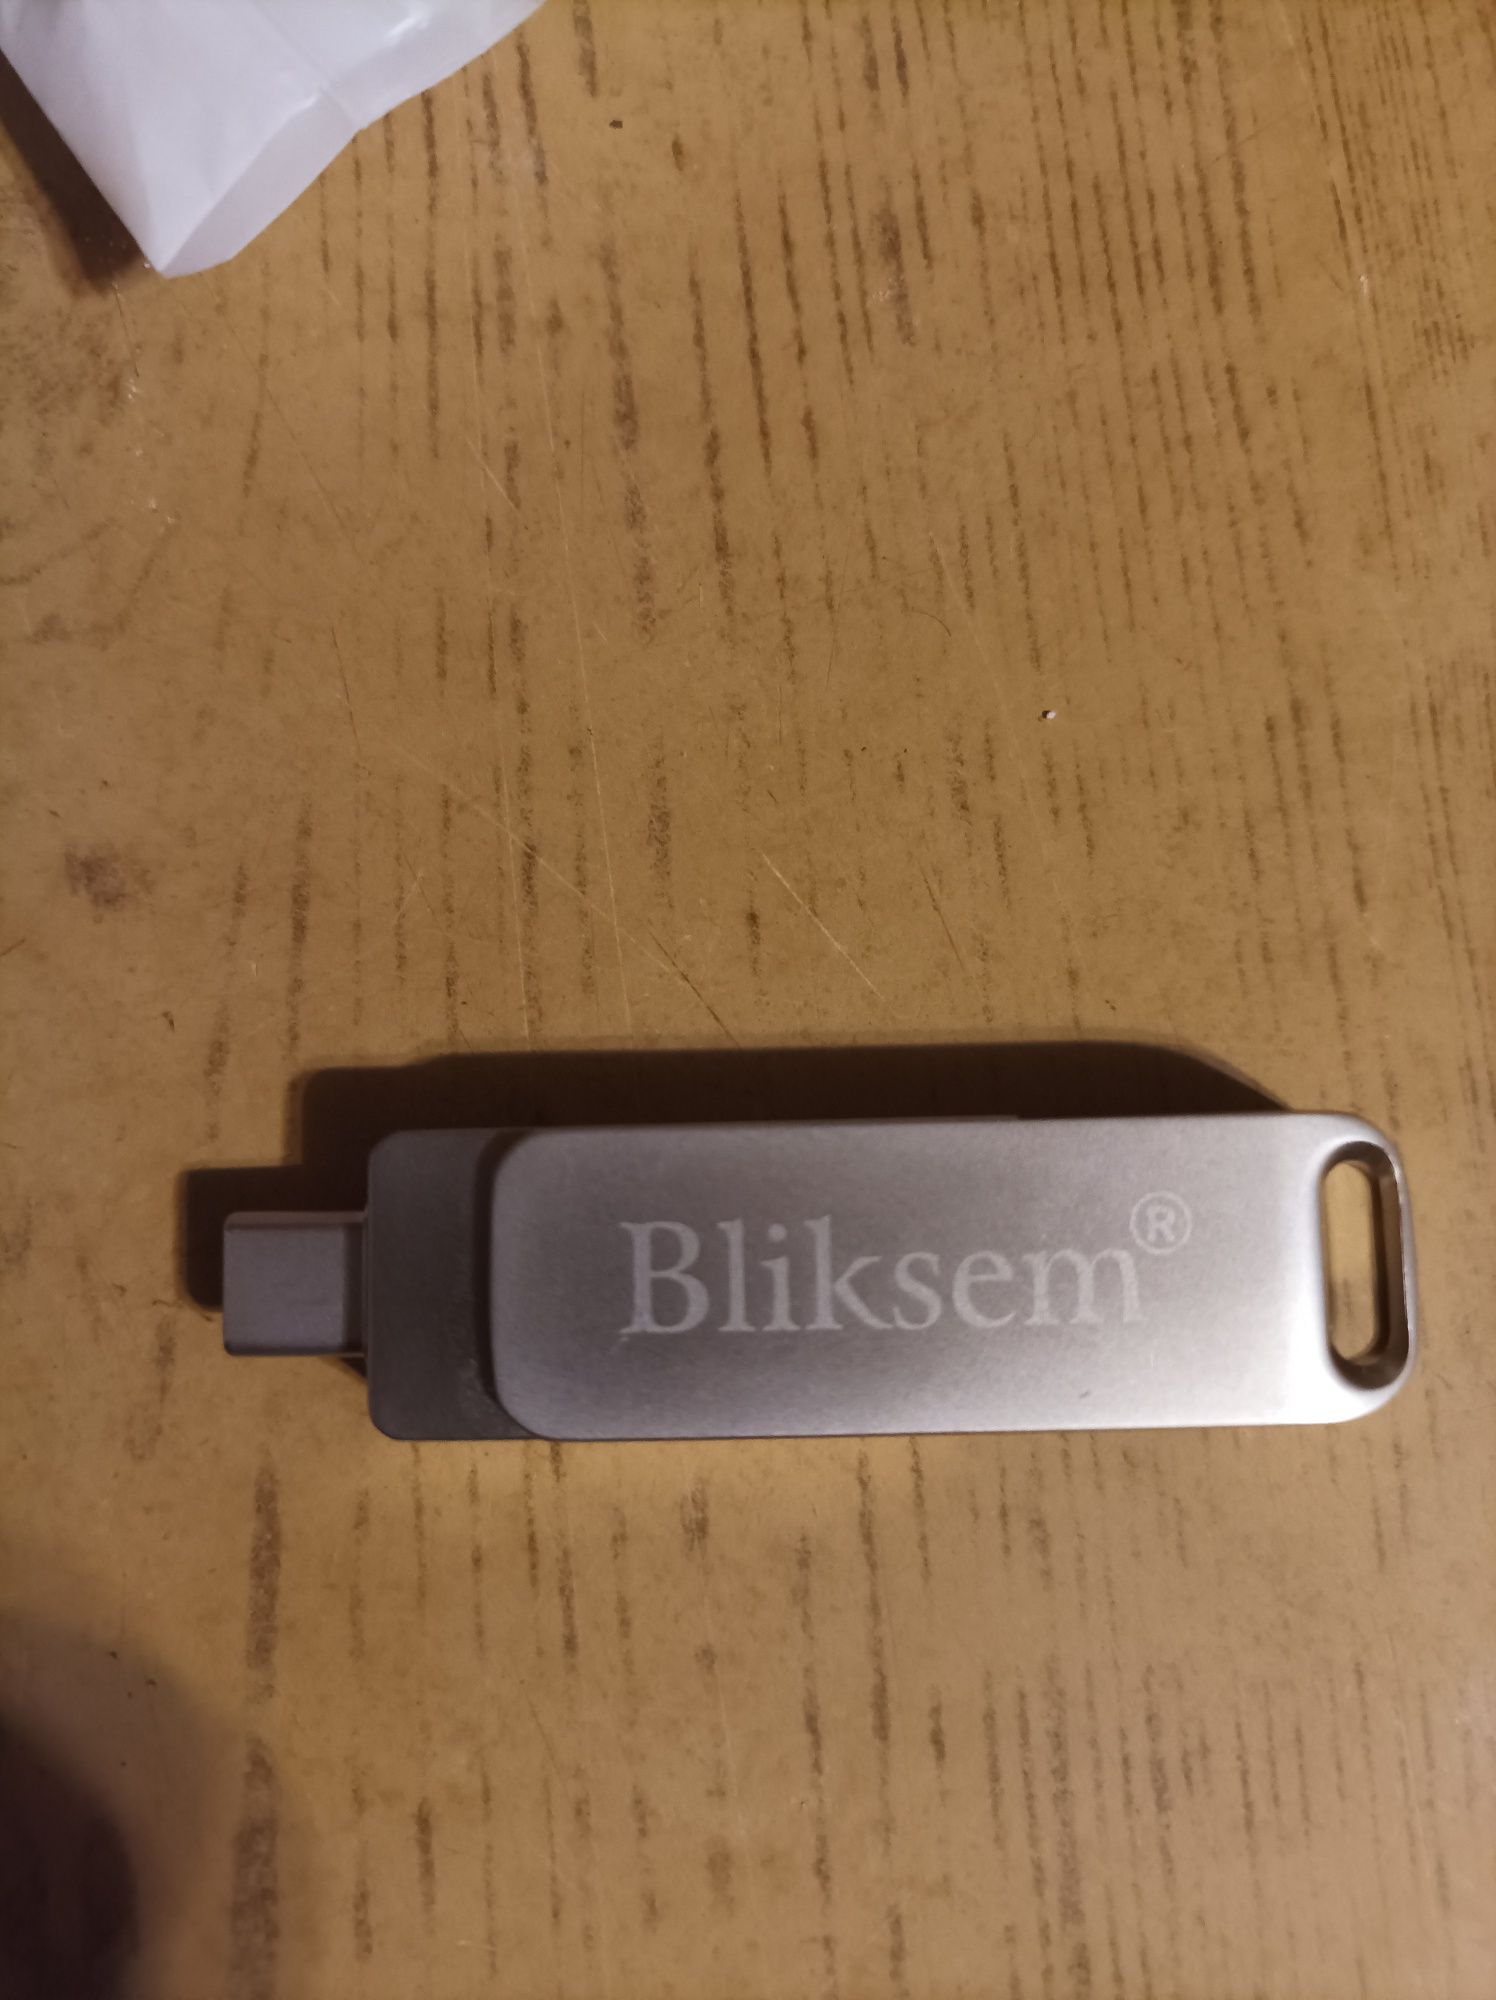 USB 3 в 1 на 64 gb.